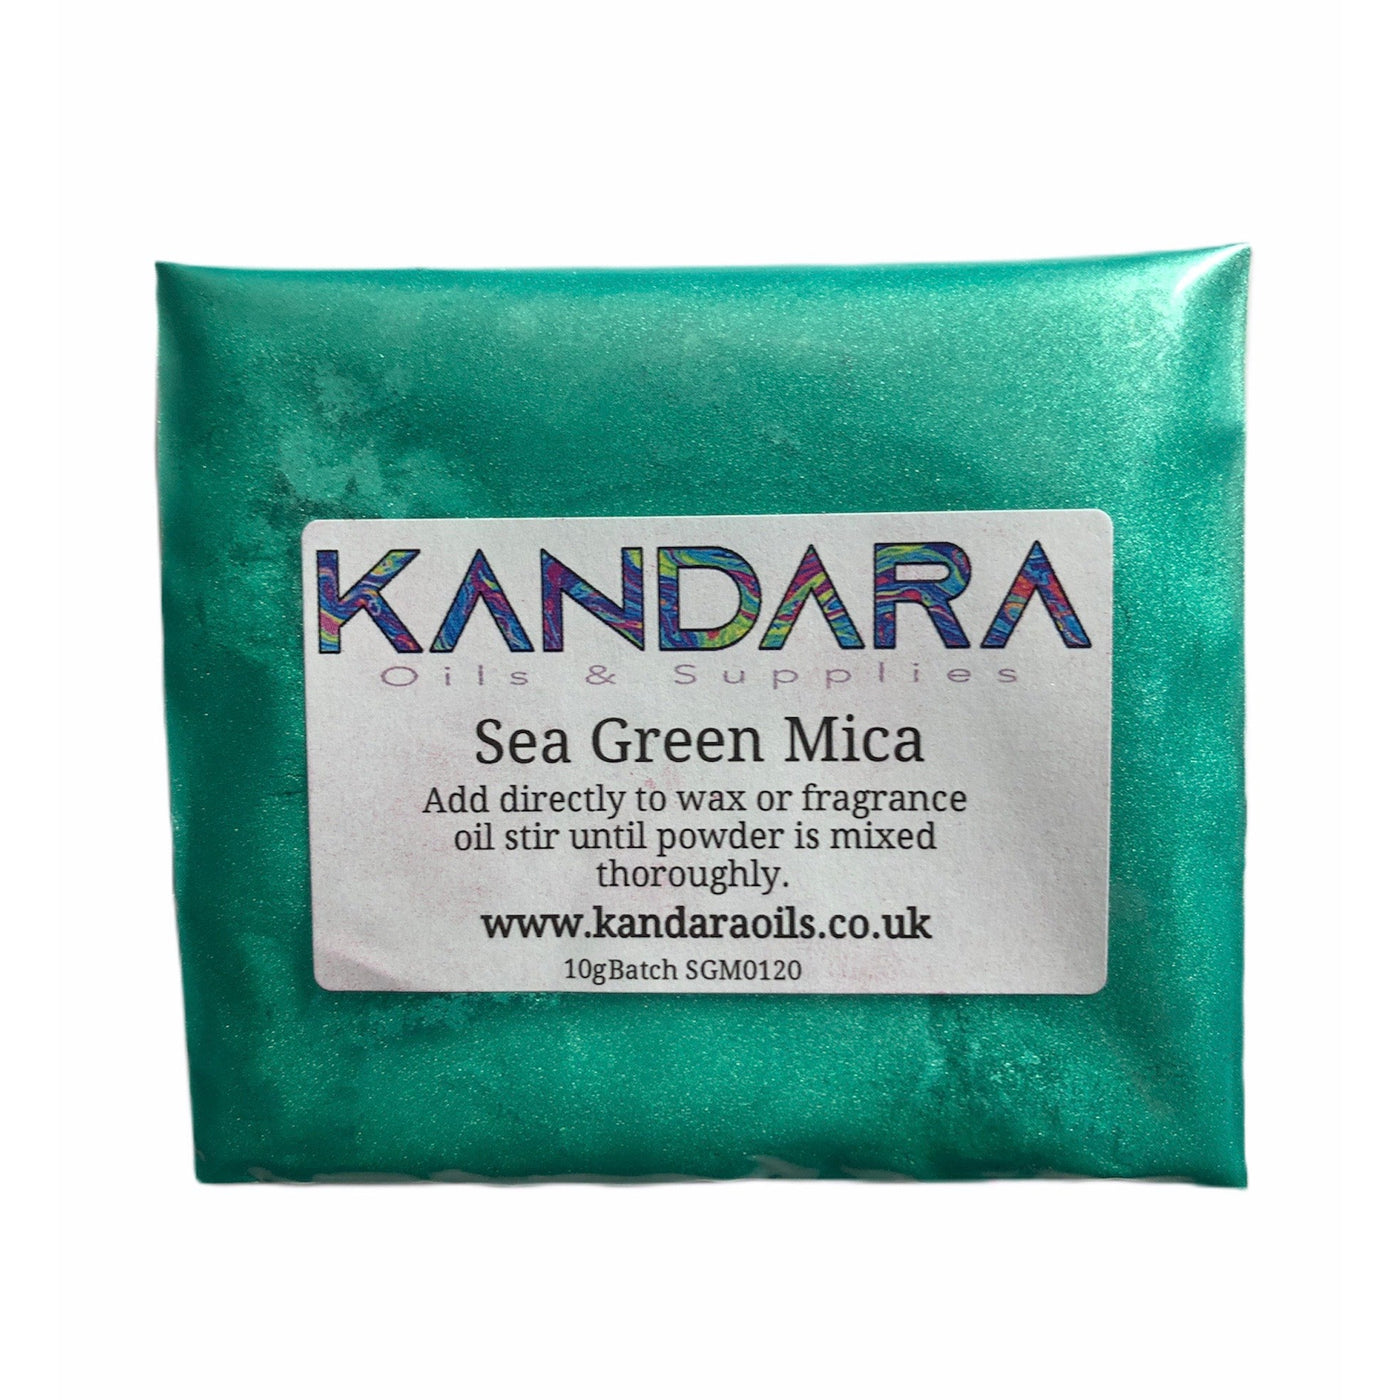 Sea Green Mica